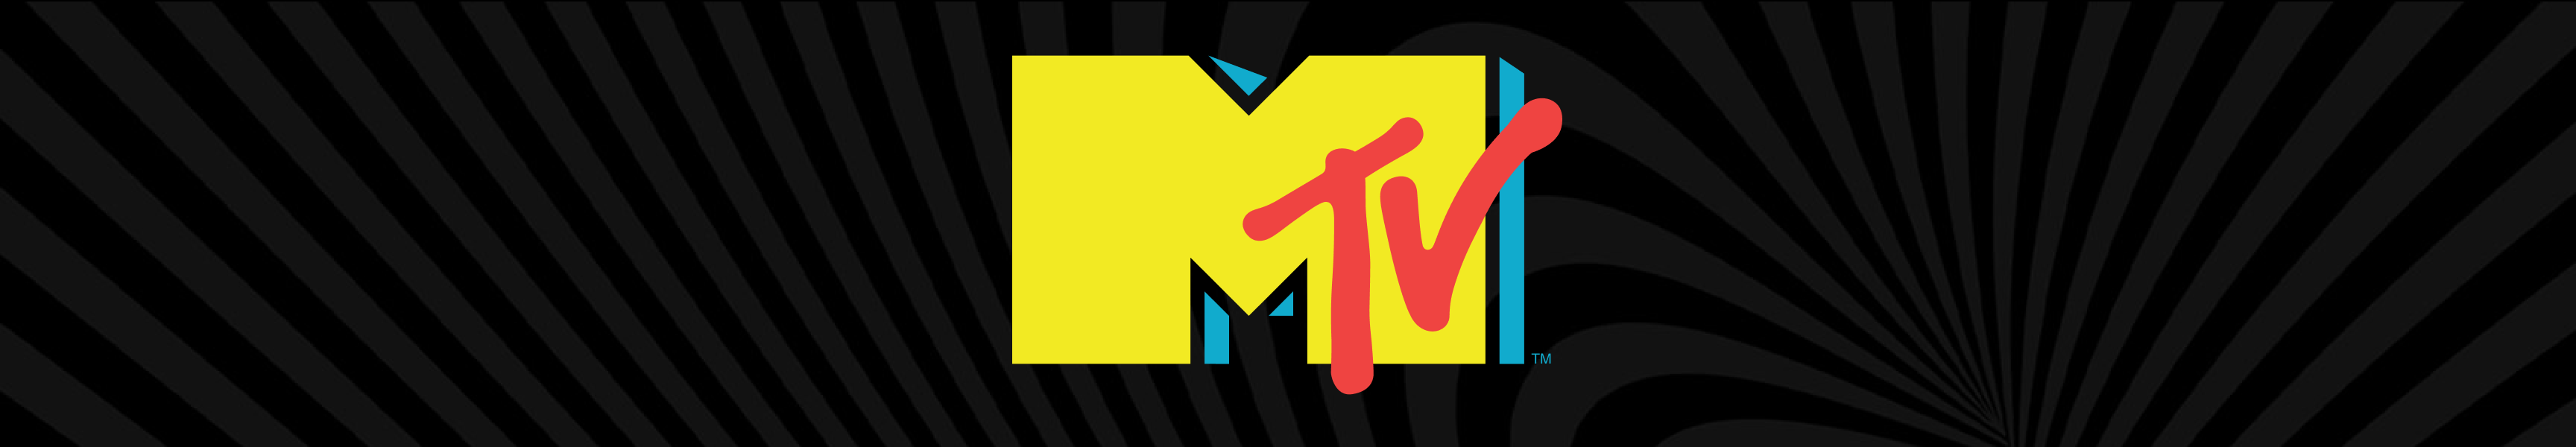 MTV Glitch & Graffiti